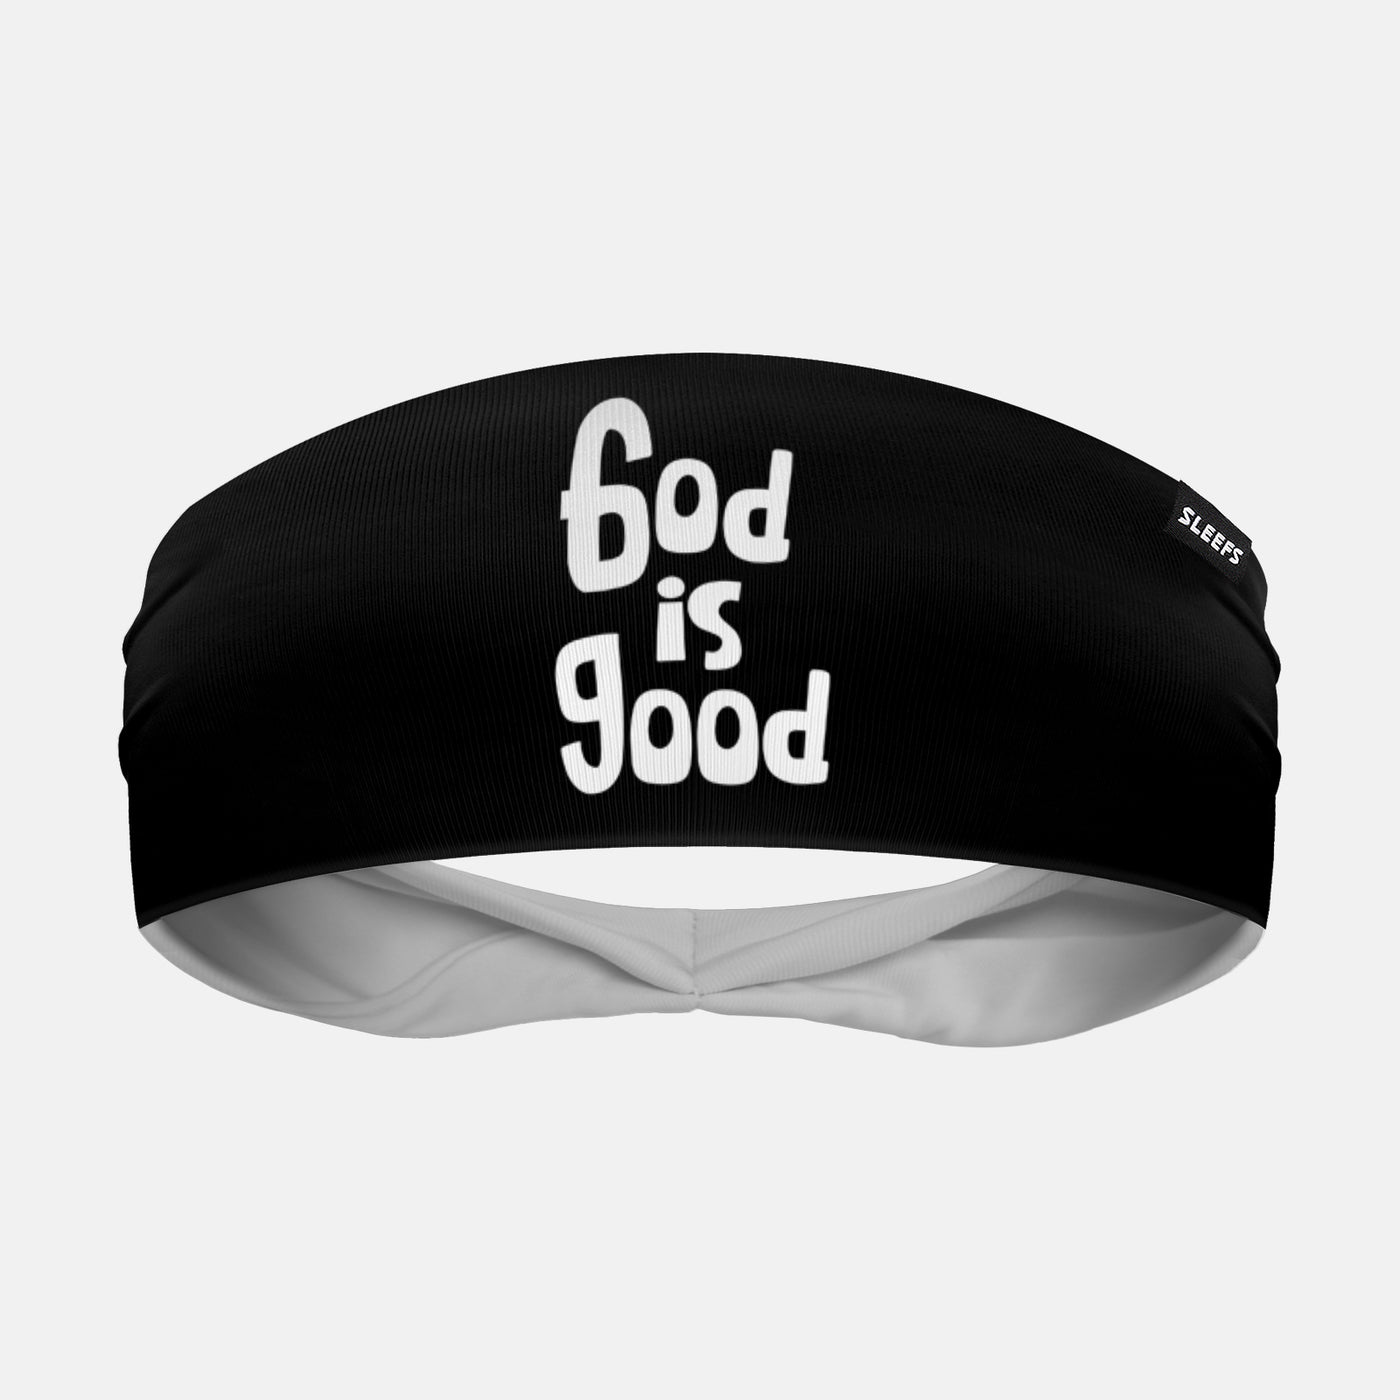 God is Good Headband